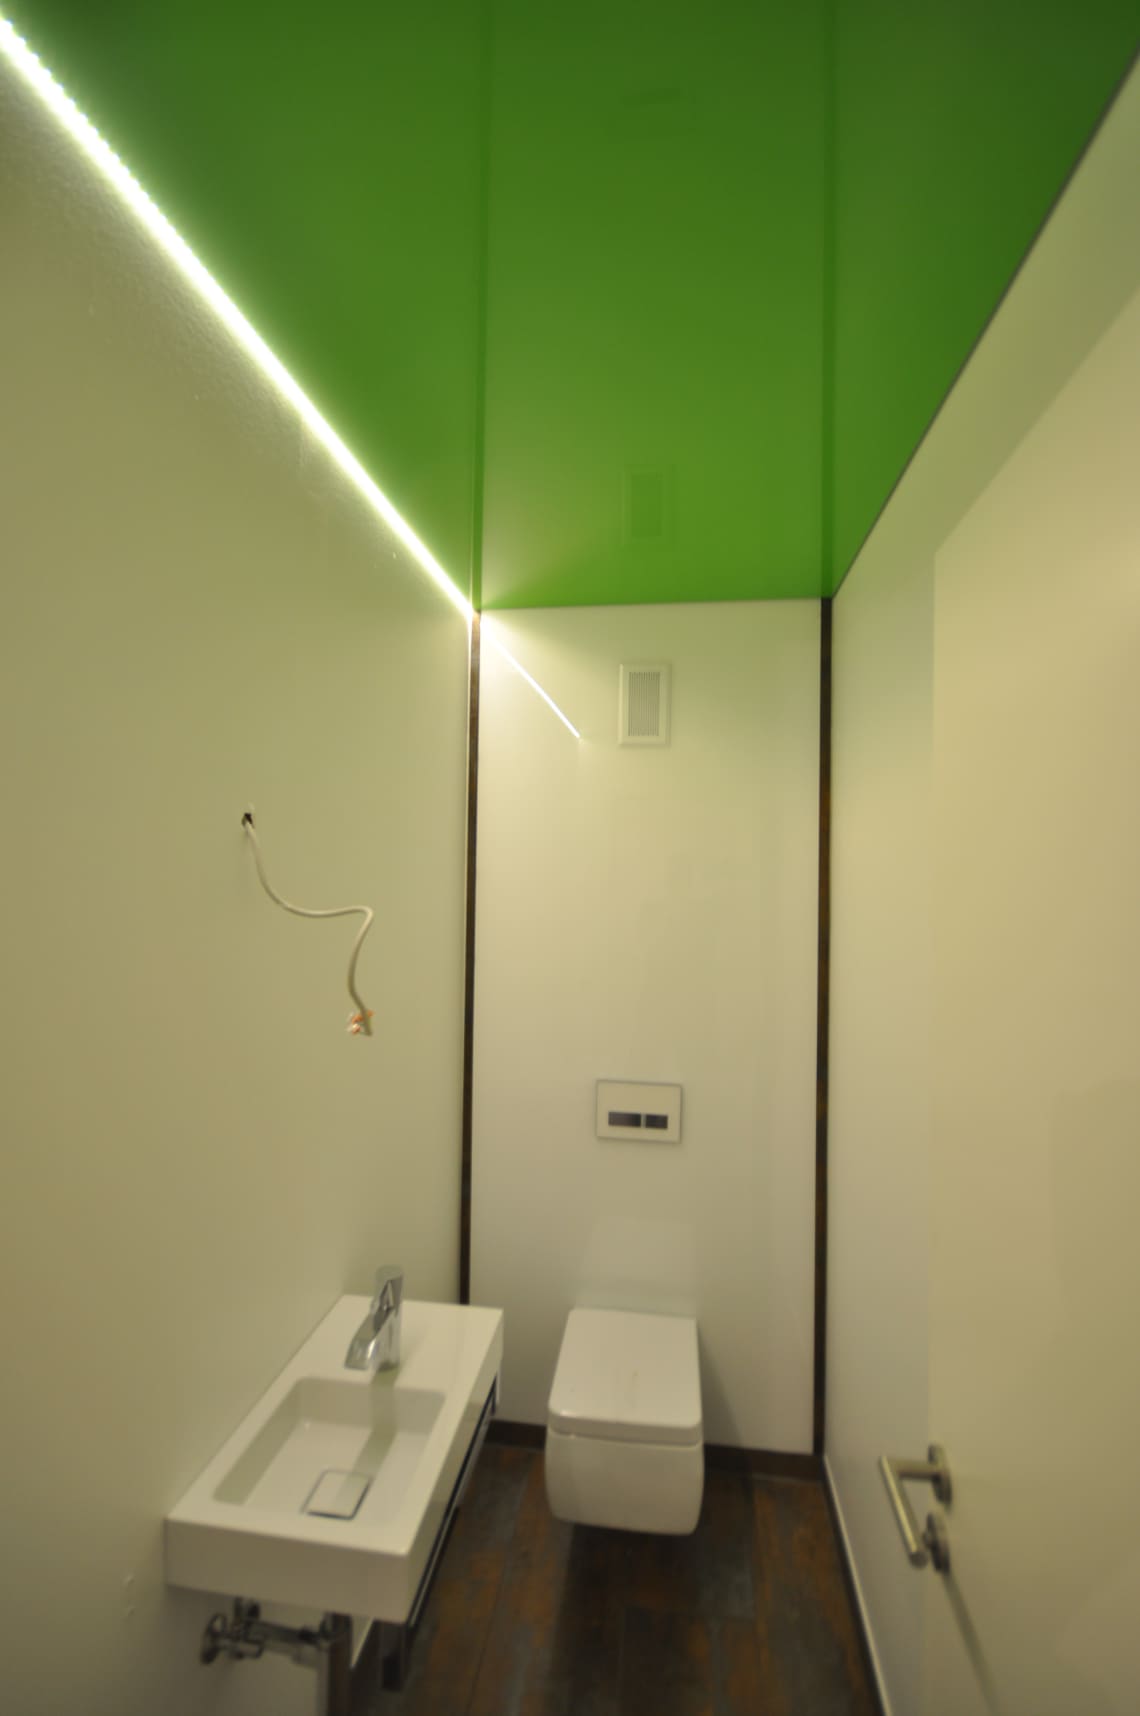 Lackspanndecke im WC in grün Hochglanz mit LED Lichtkanal in der Schattenfuge